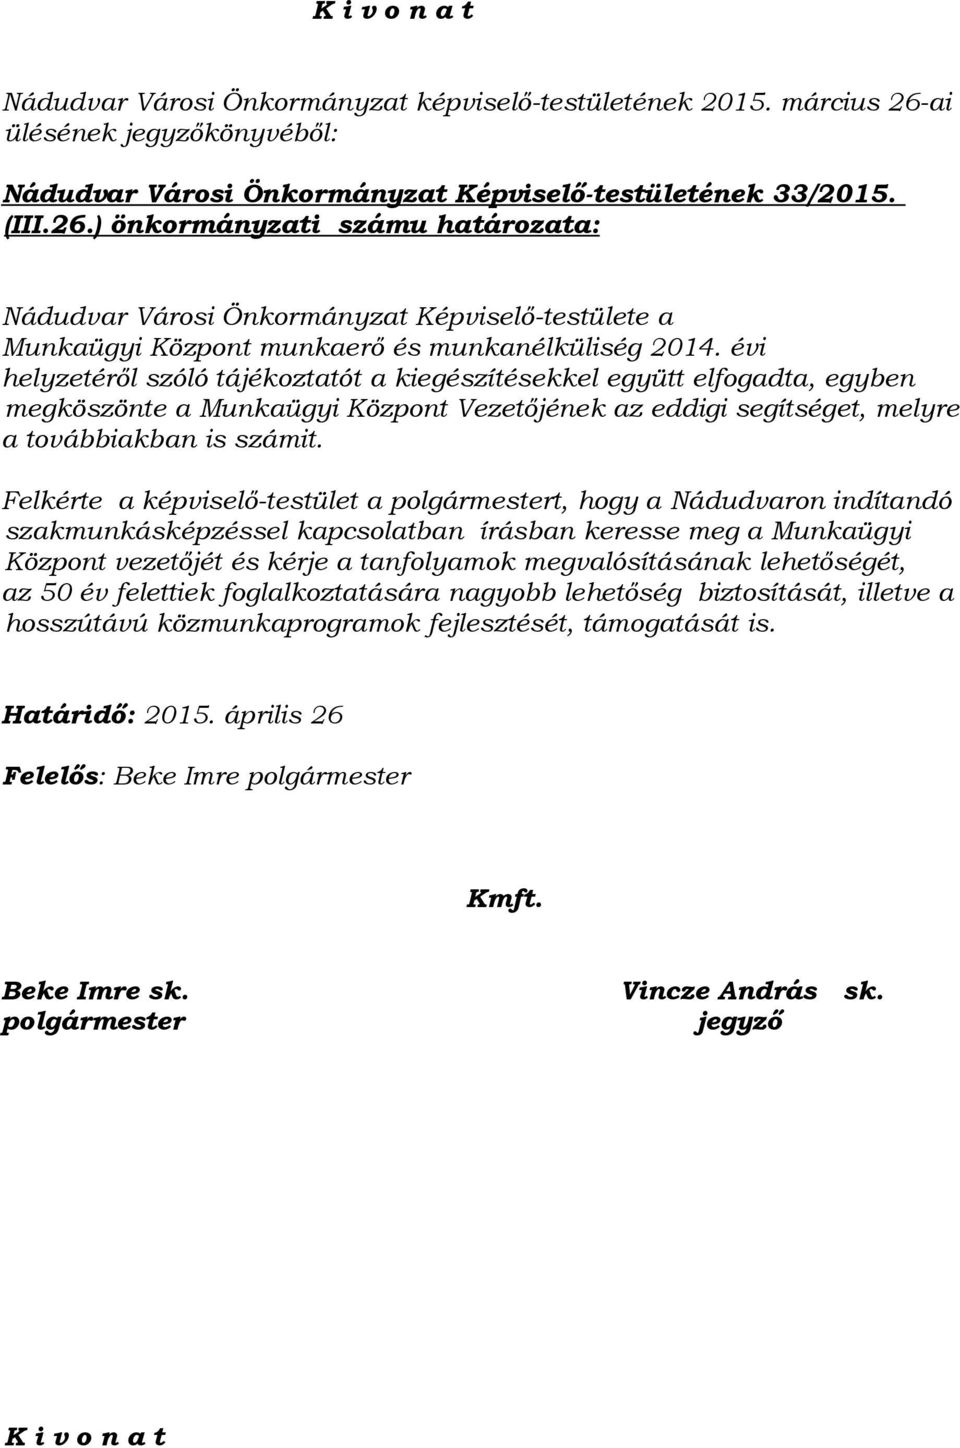 ) önkormányzati számu határozata: Nádudvar Városi Önkormányzat Képviselő-testülete a Munkaügyi Központ munkaerő és munkanélküliség 2014.